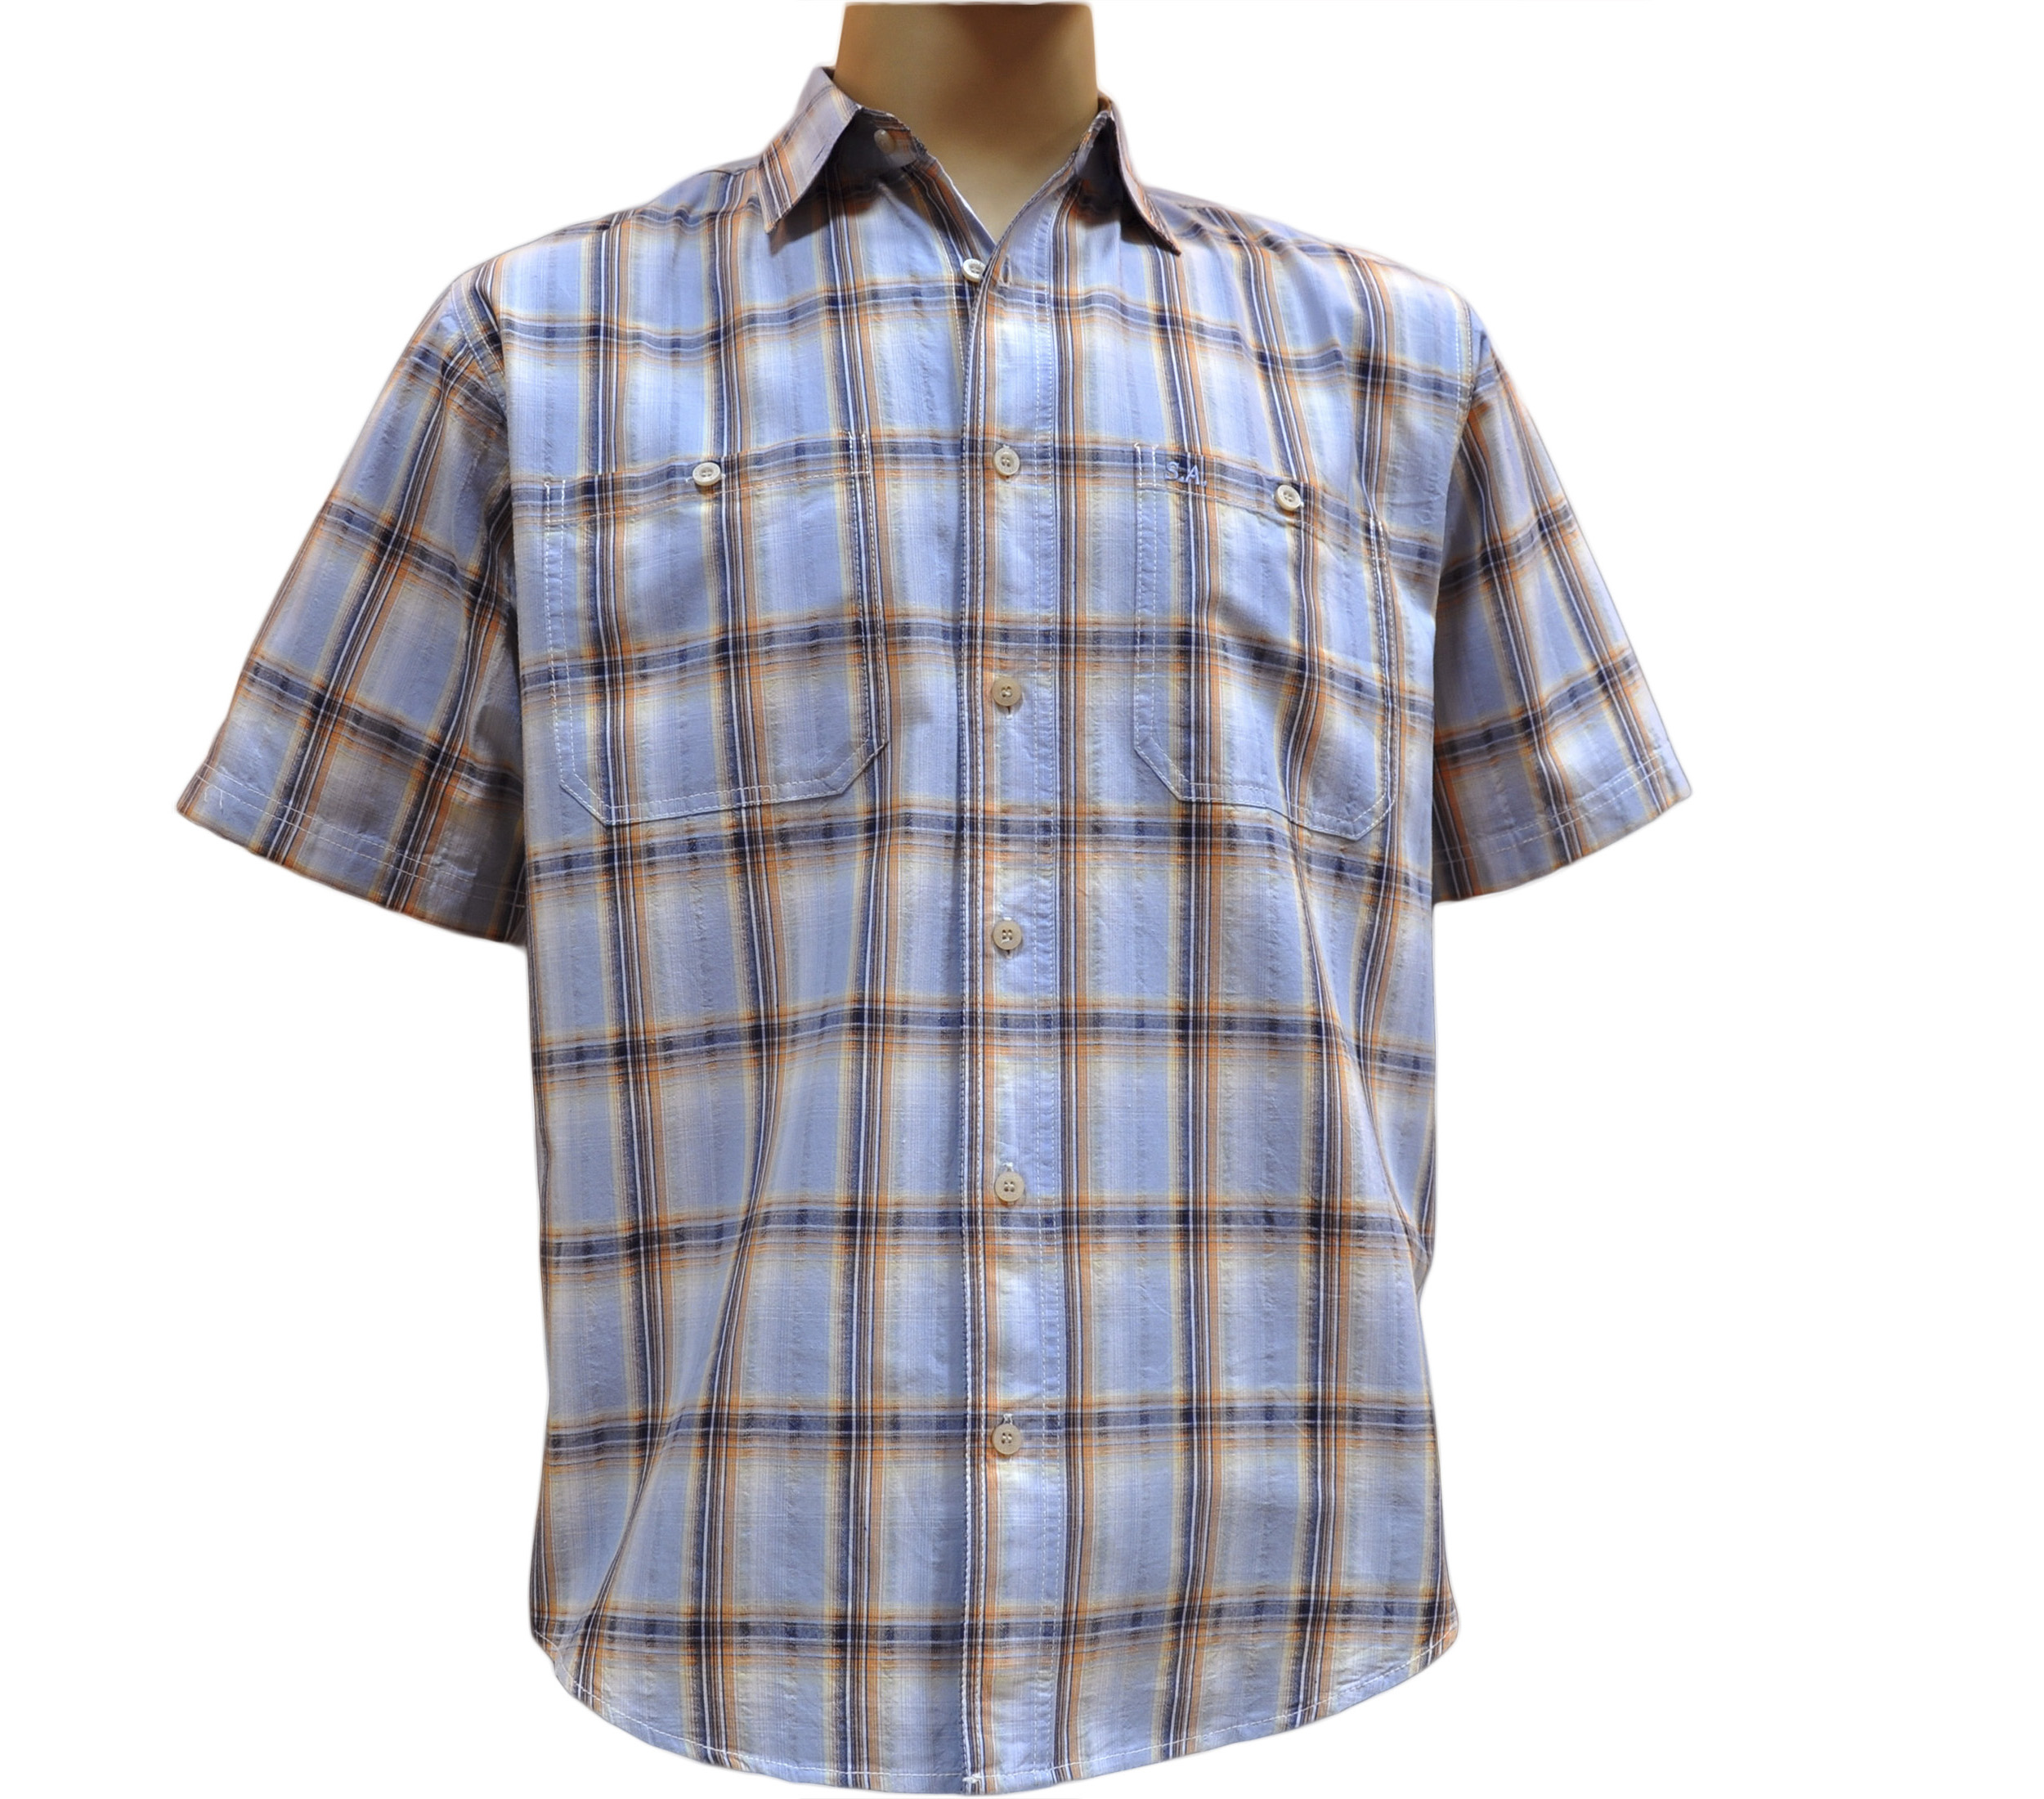 Мужская рубашка с коротким рукавом в крупную оранжево-голубую клетку.  Размер